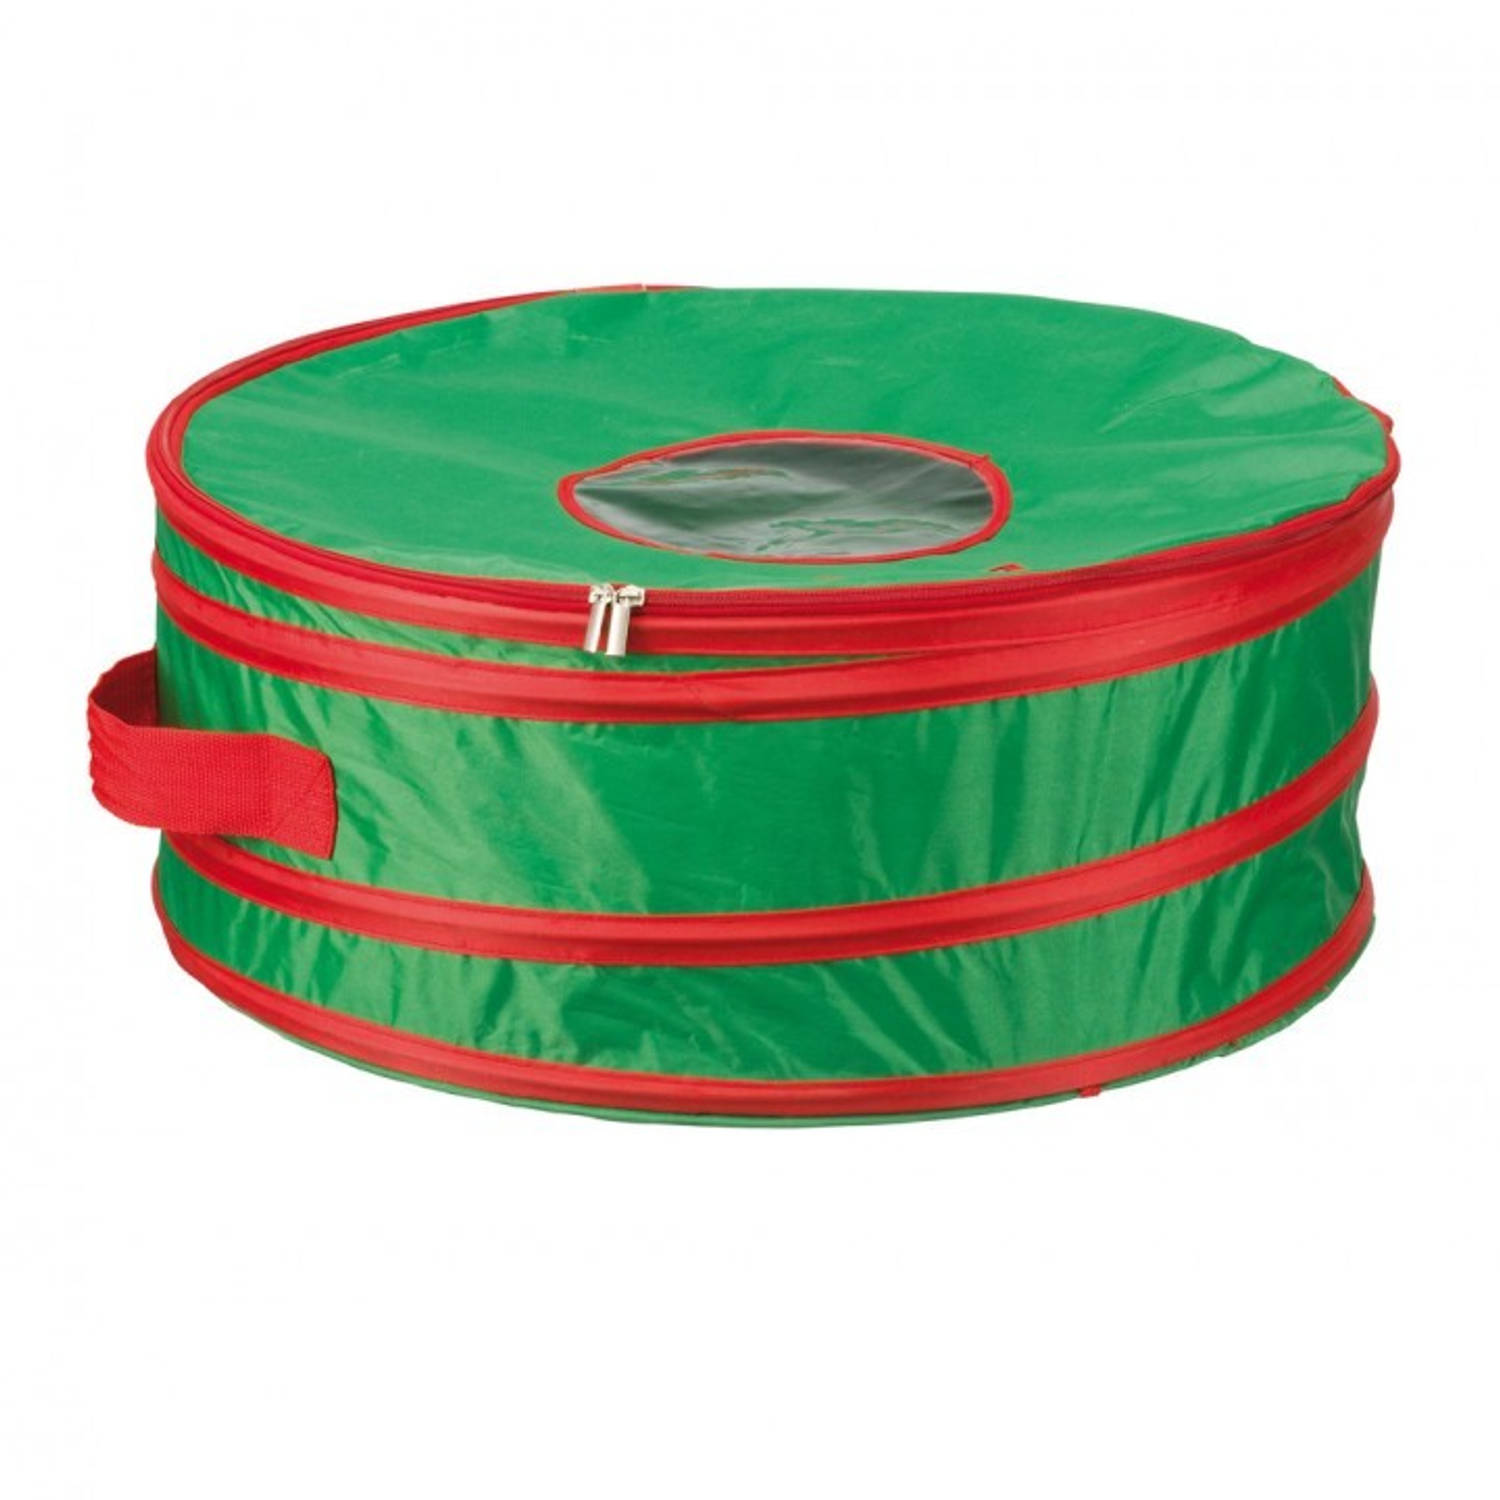 Kersttas voor grote kerstkrans - groen/rood